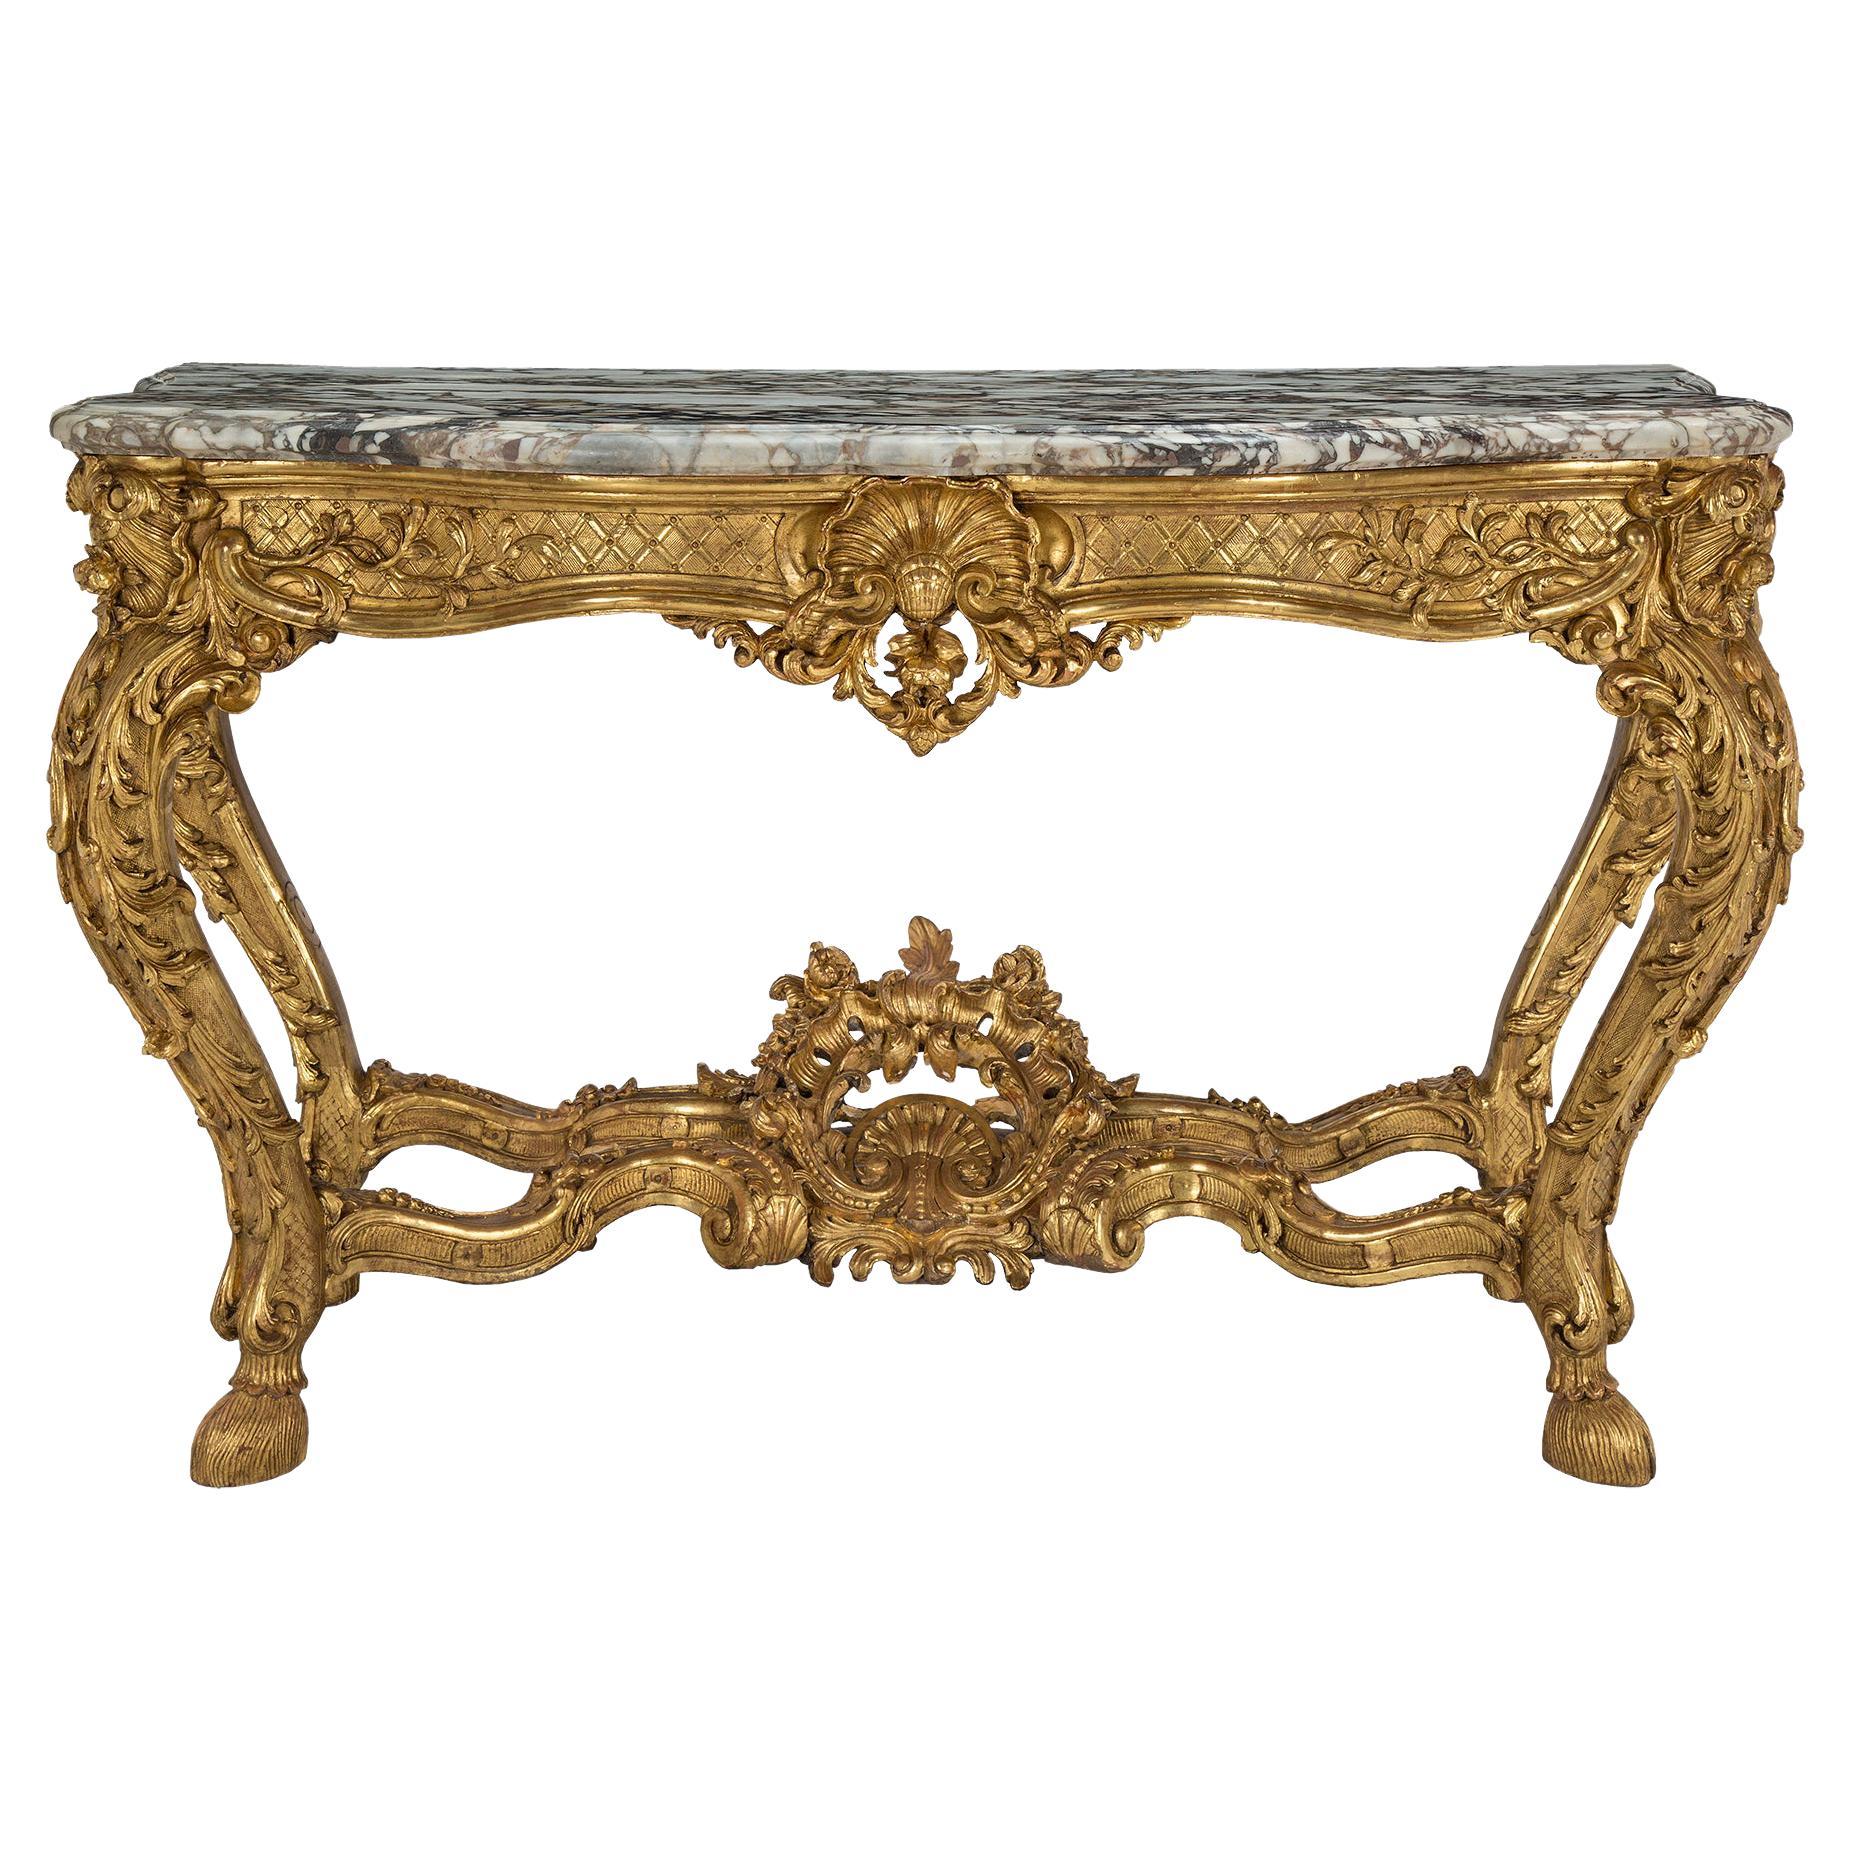 Console autoportante en bois doré et marbre de la période Régence du 18ème siècle français